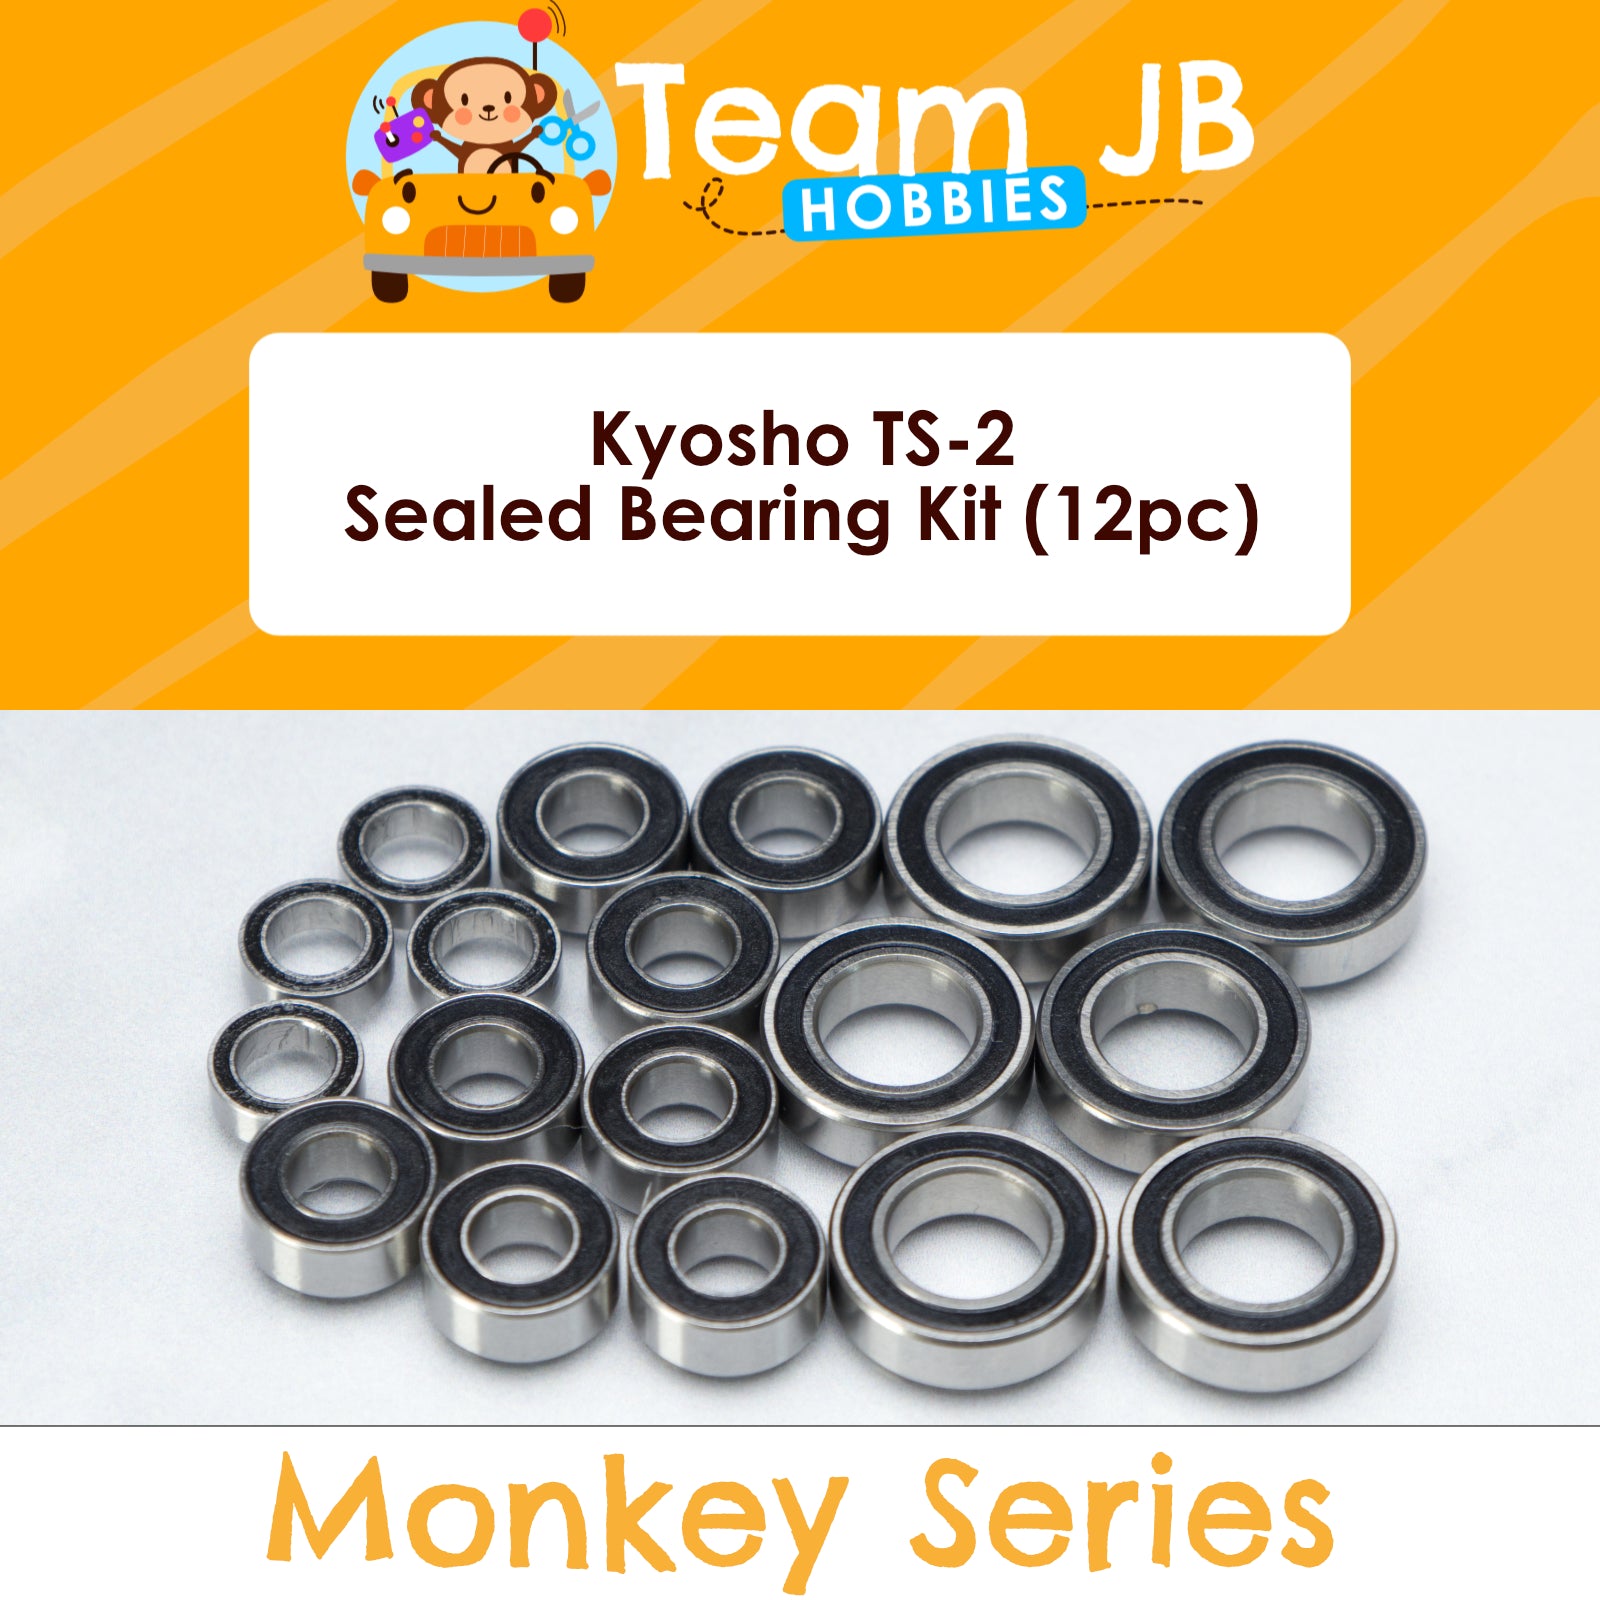 Kyosho TS-2 - Sealed Bearing Kit